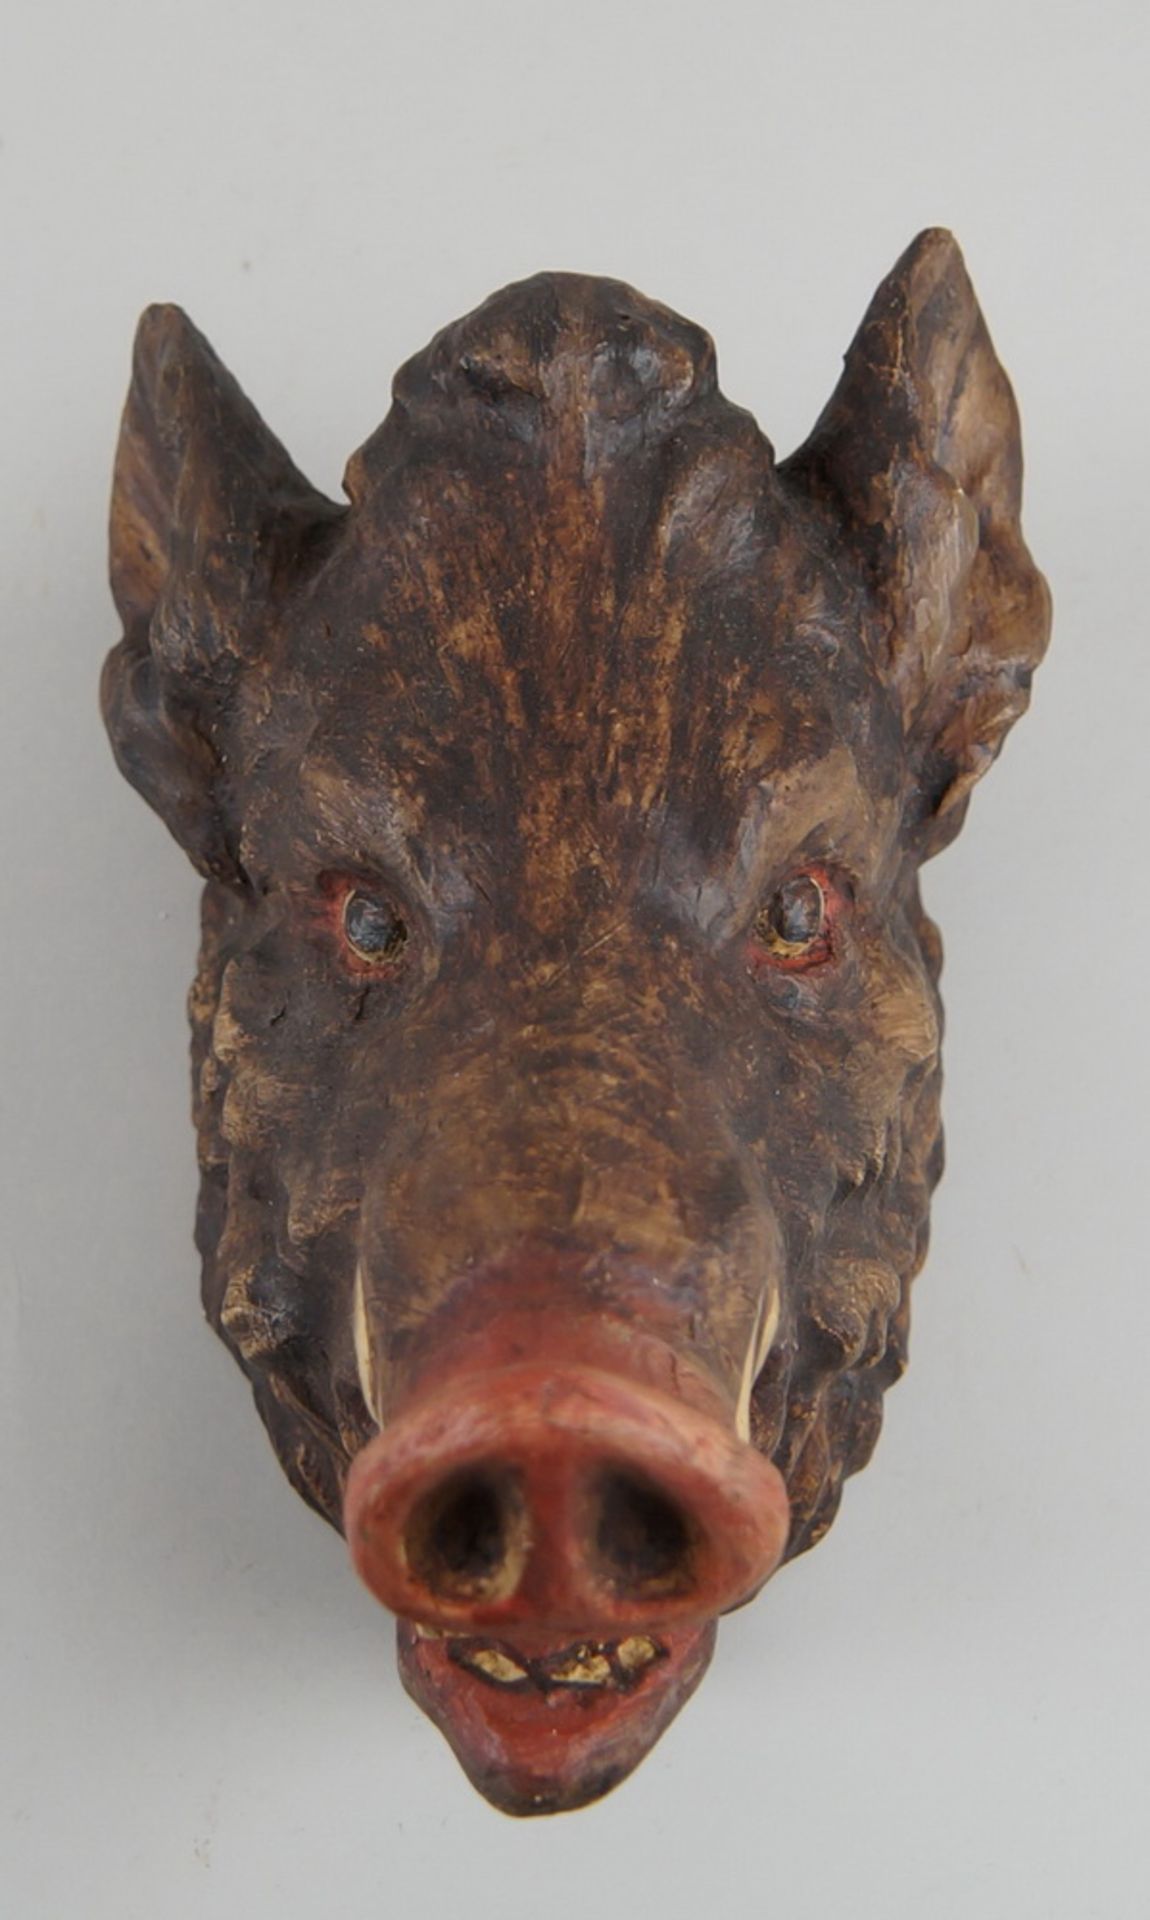 Saukopf / Wildschwein / Eber, Holz geschnitzt und gefasst, auf Brett zum hängen, H 27 cm - Bild 2 aus 6